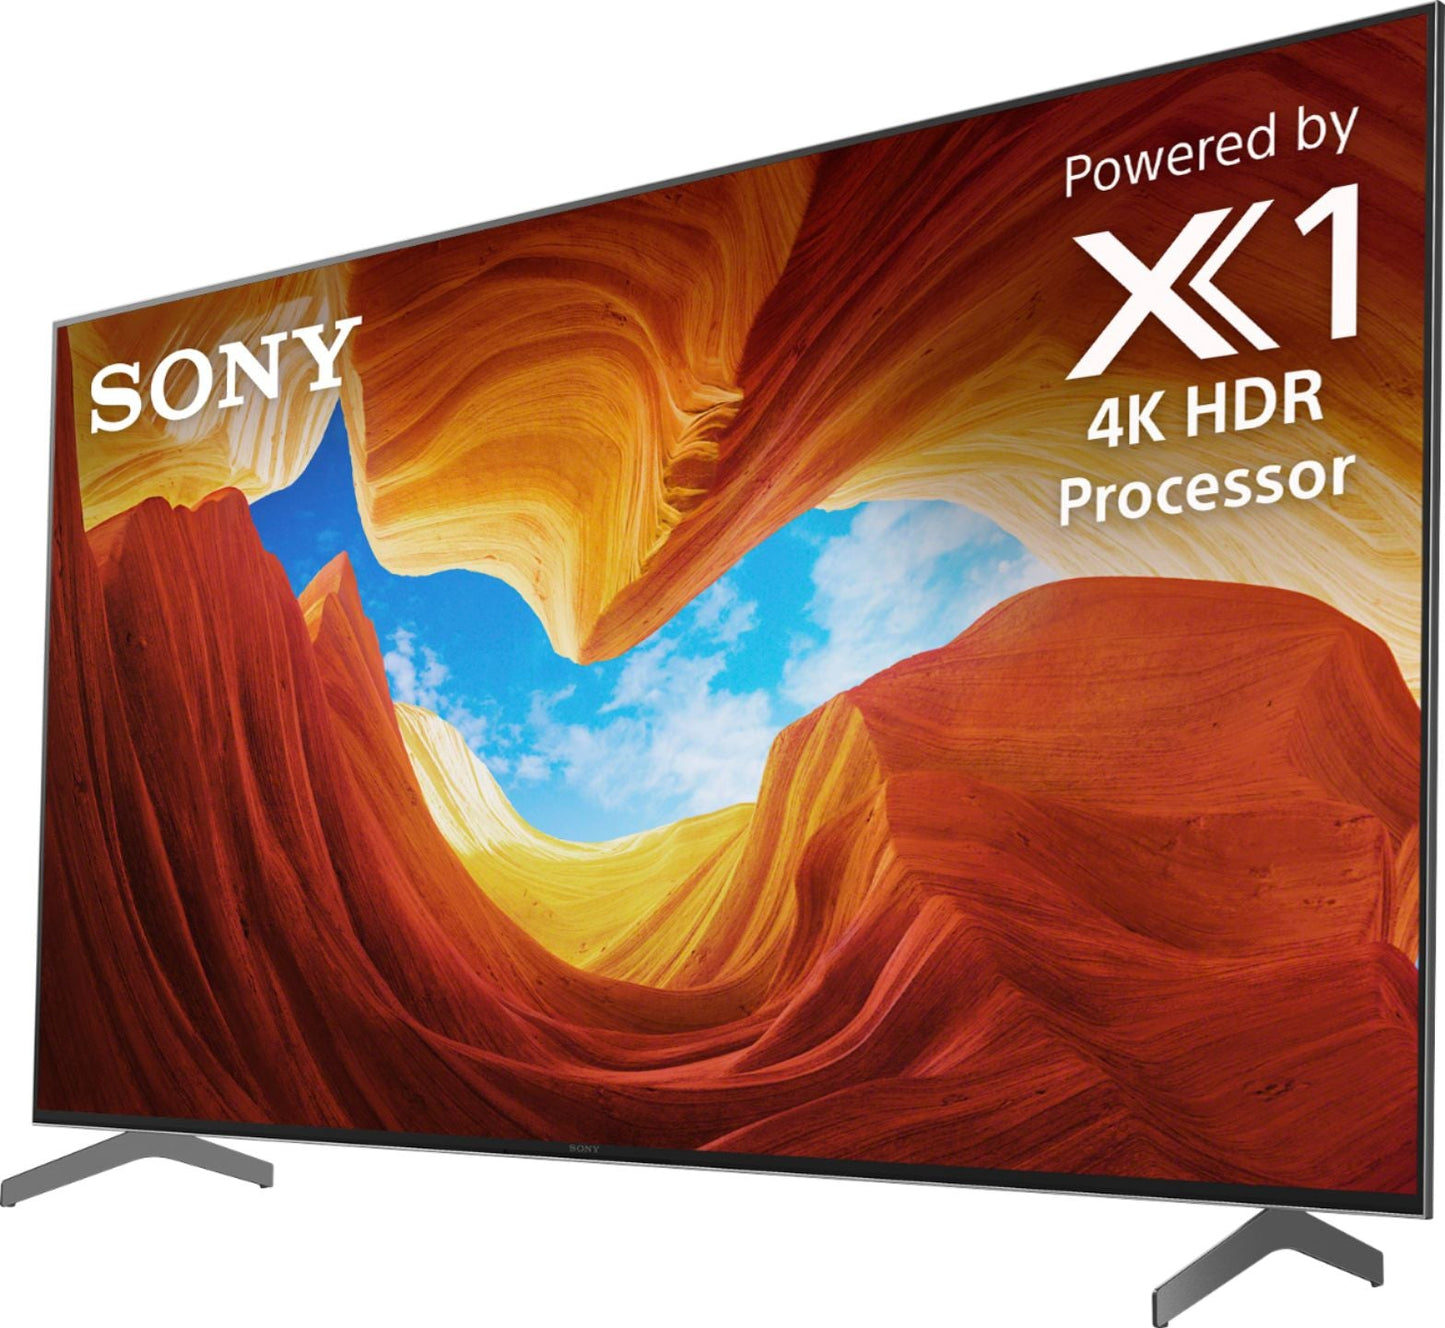 Sony X900H 65" Class HDR 4K UHD Smart LED TV XBR65X900H